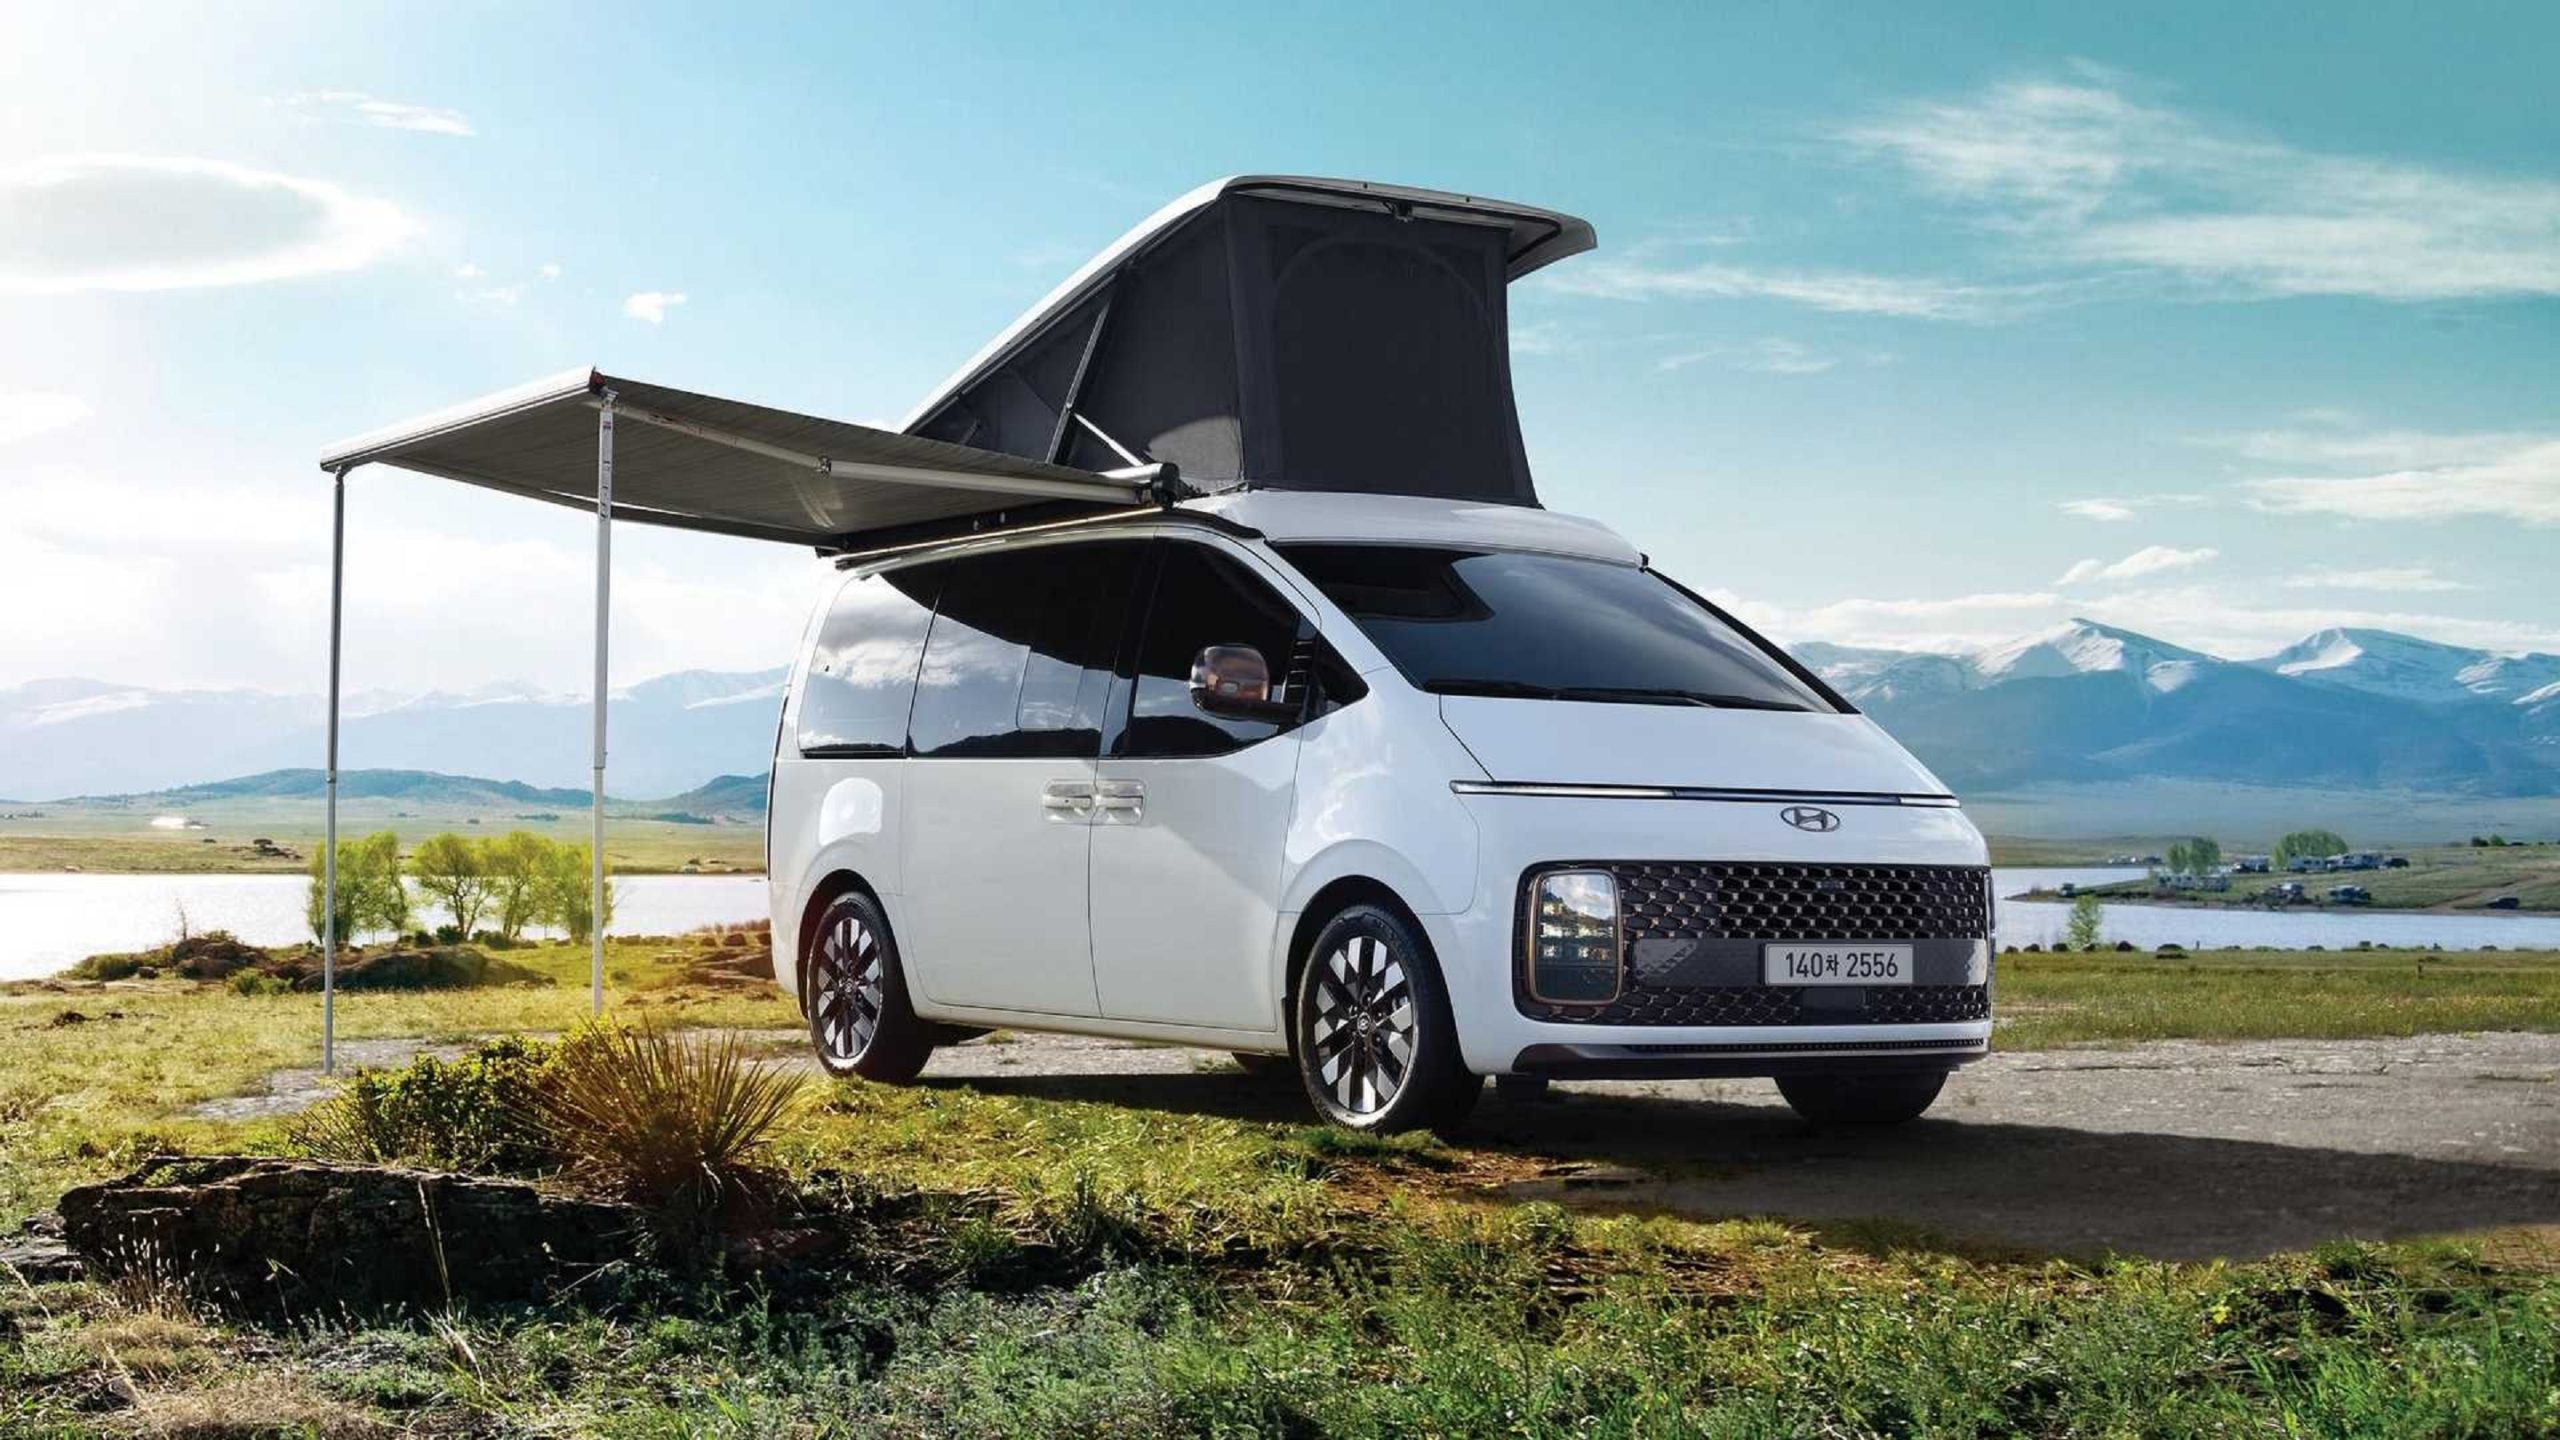 A white 2022 Hyundai Staria Lounge Camper with accessories in a grassy field